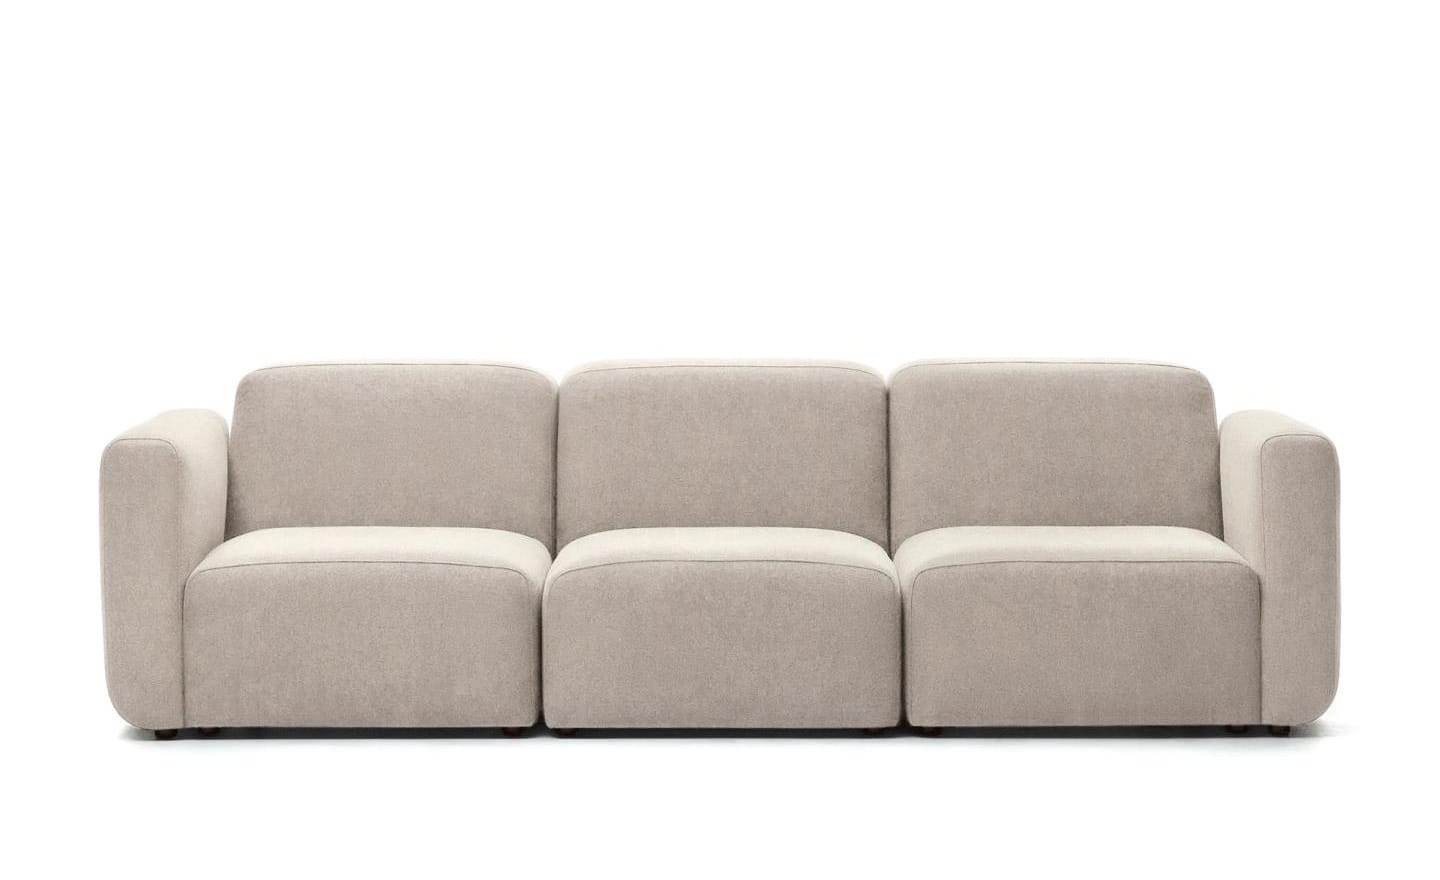 Sofá de 3 Lugares Neom Bege, sofá estofado em tecido bege estruturado, modular e versátil.